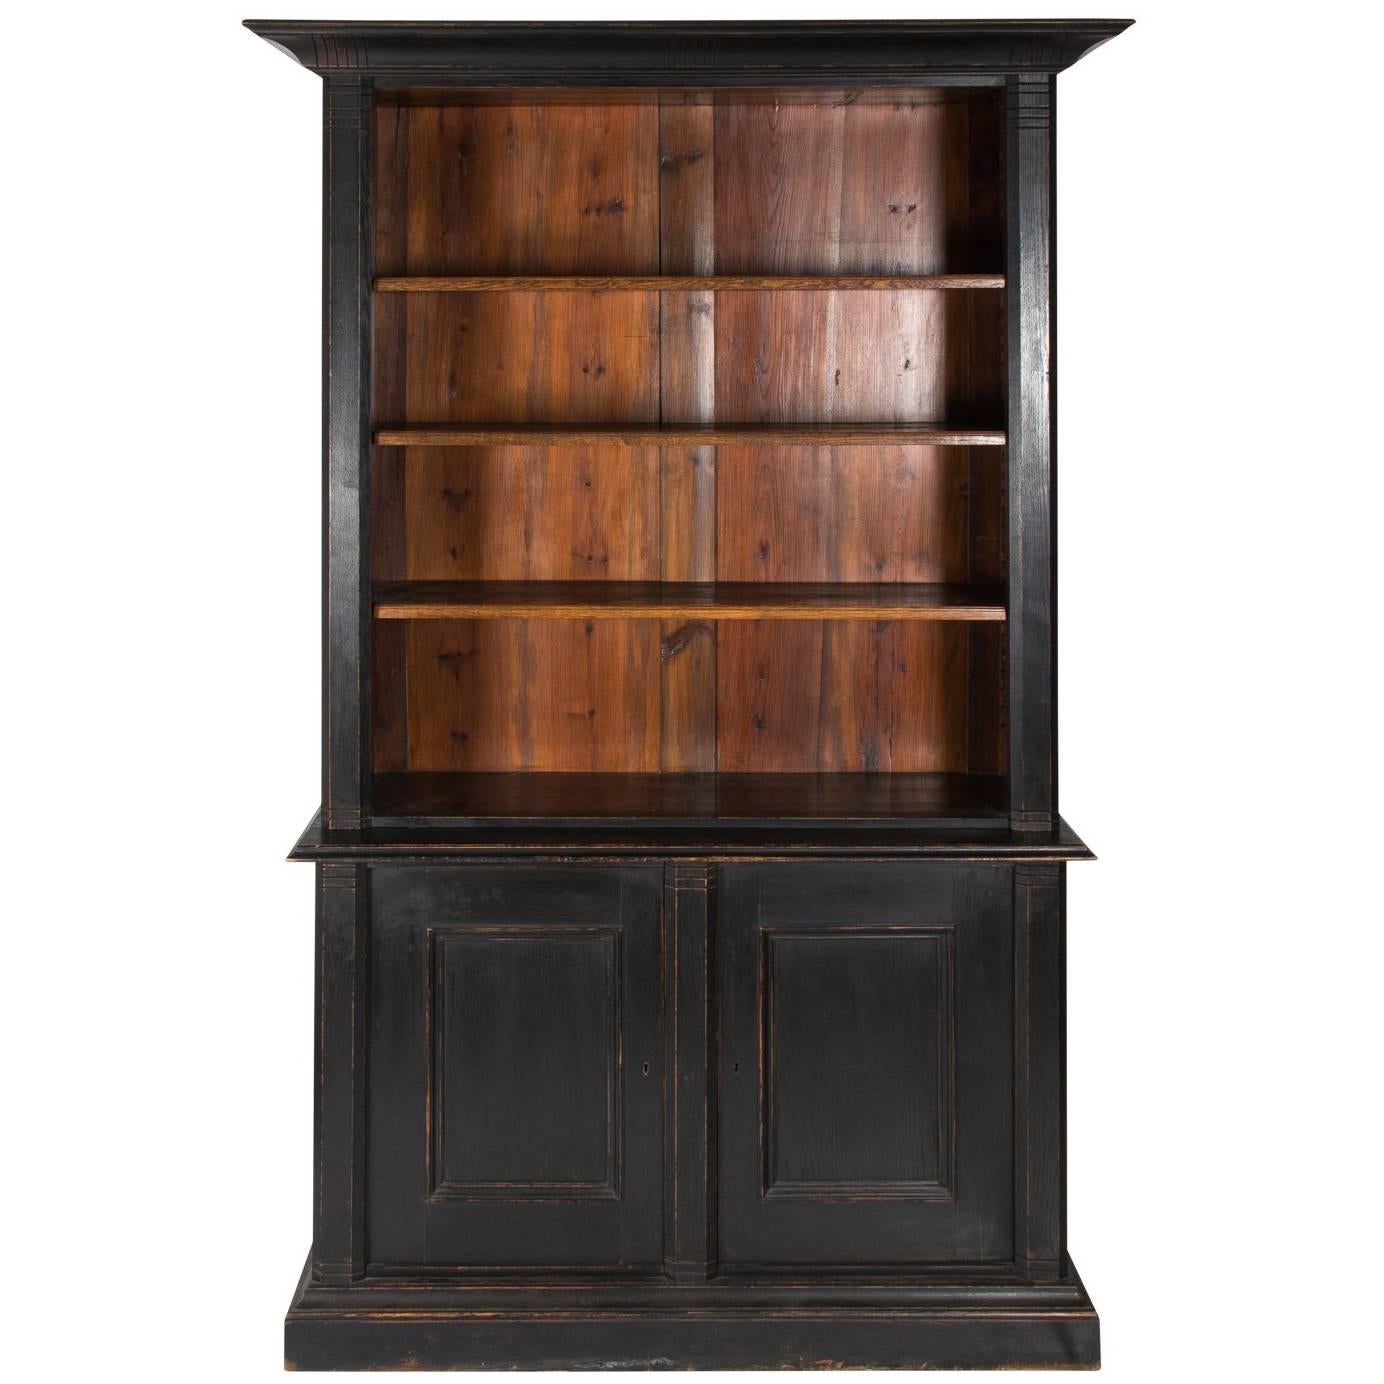 Late 19th Century, Ebonized Bookcase